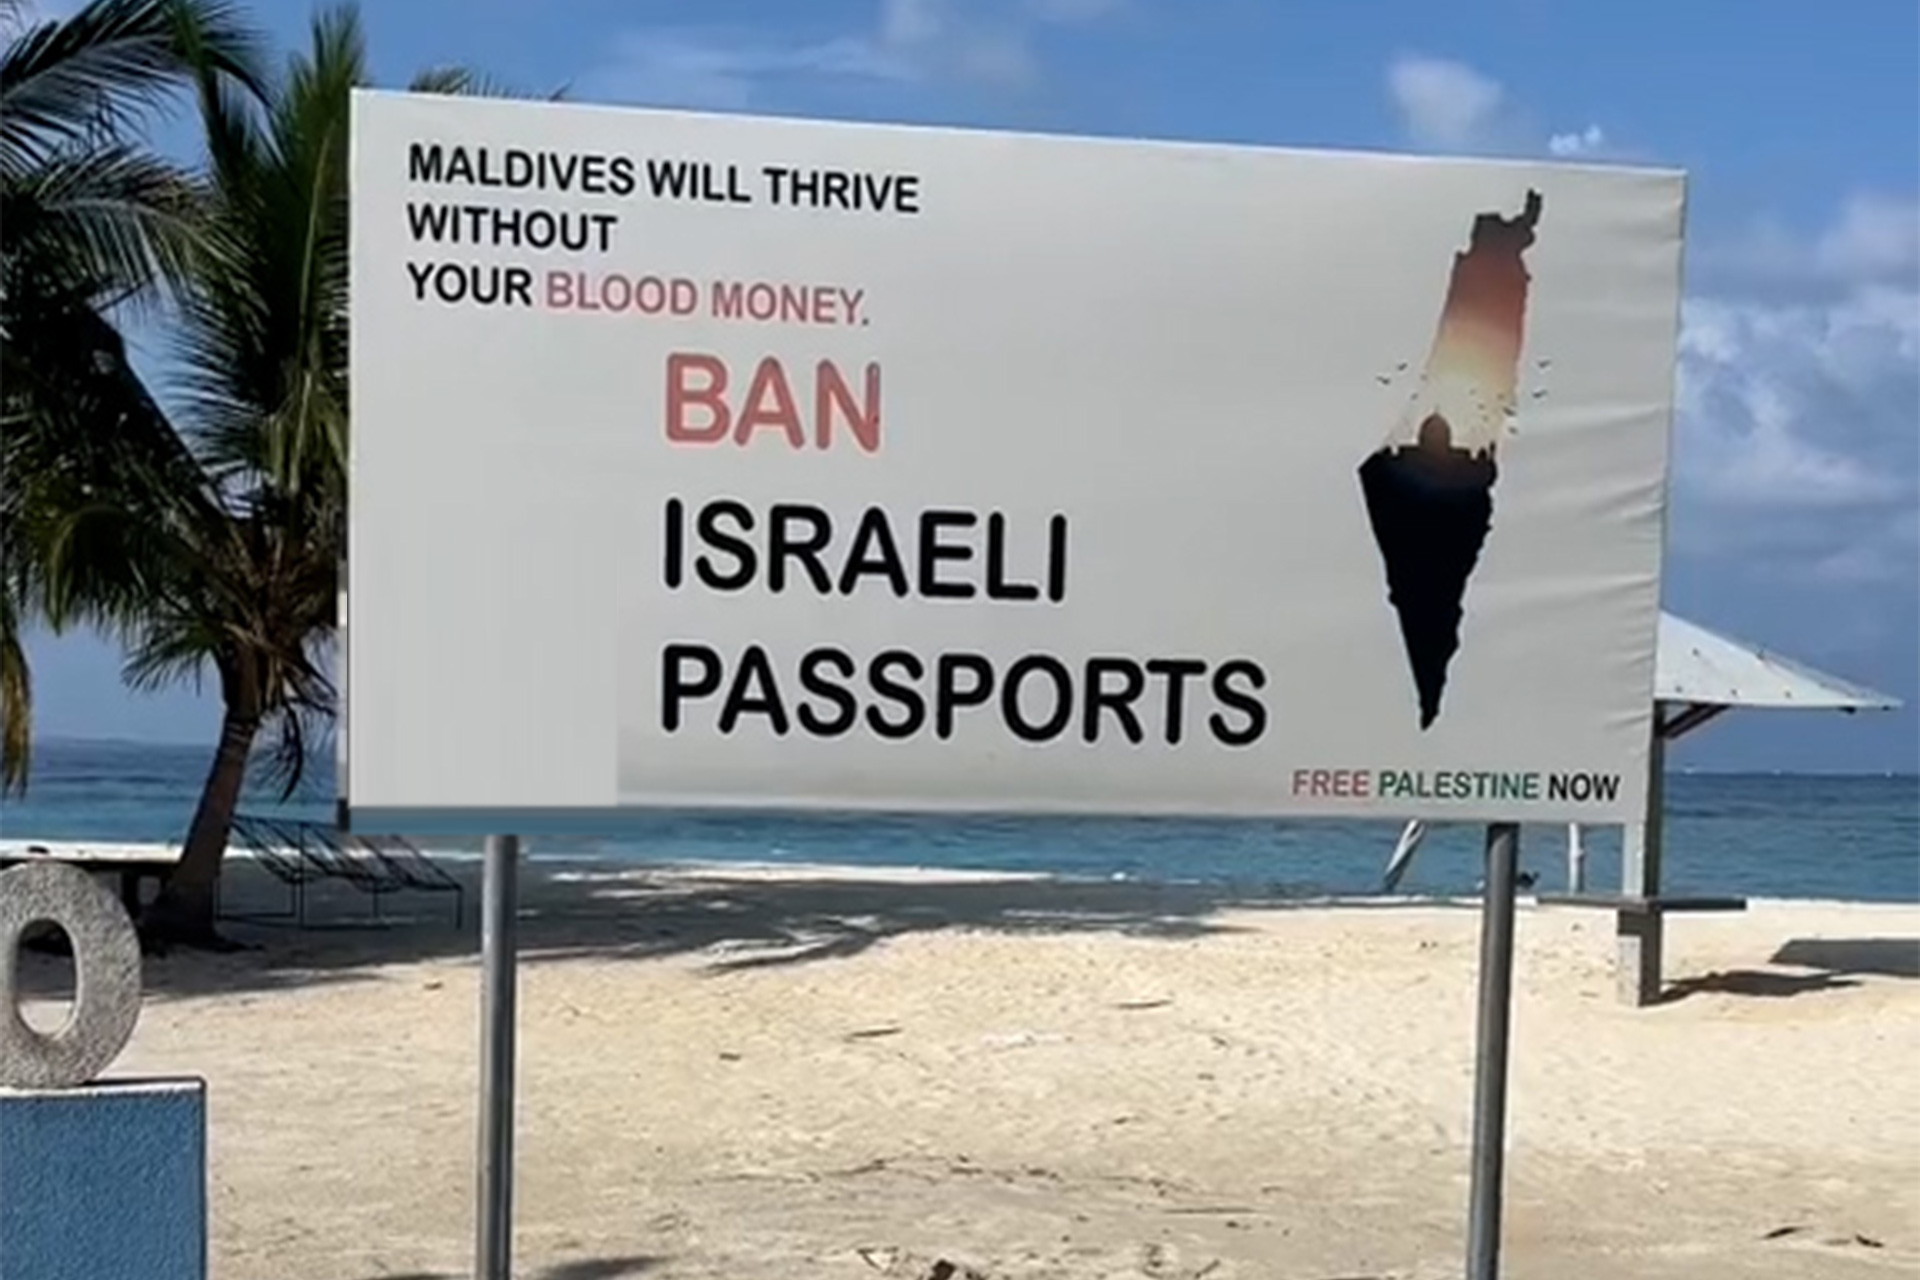 المالديف تحظر دخول الإسرائيليين أراضيها | أخبار – البوكس نيوز